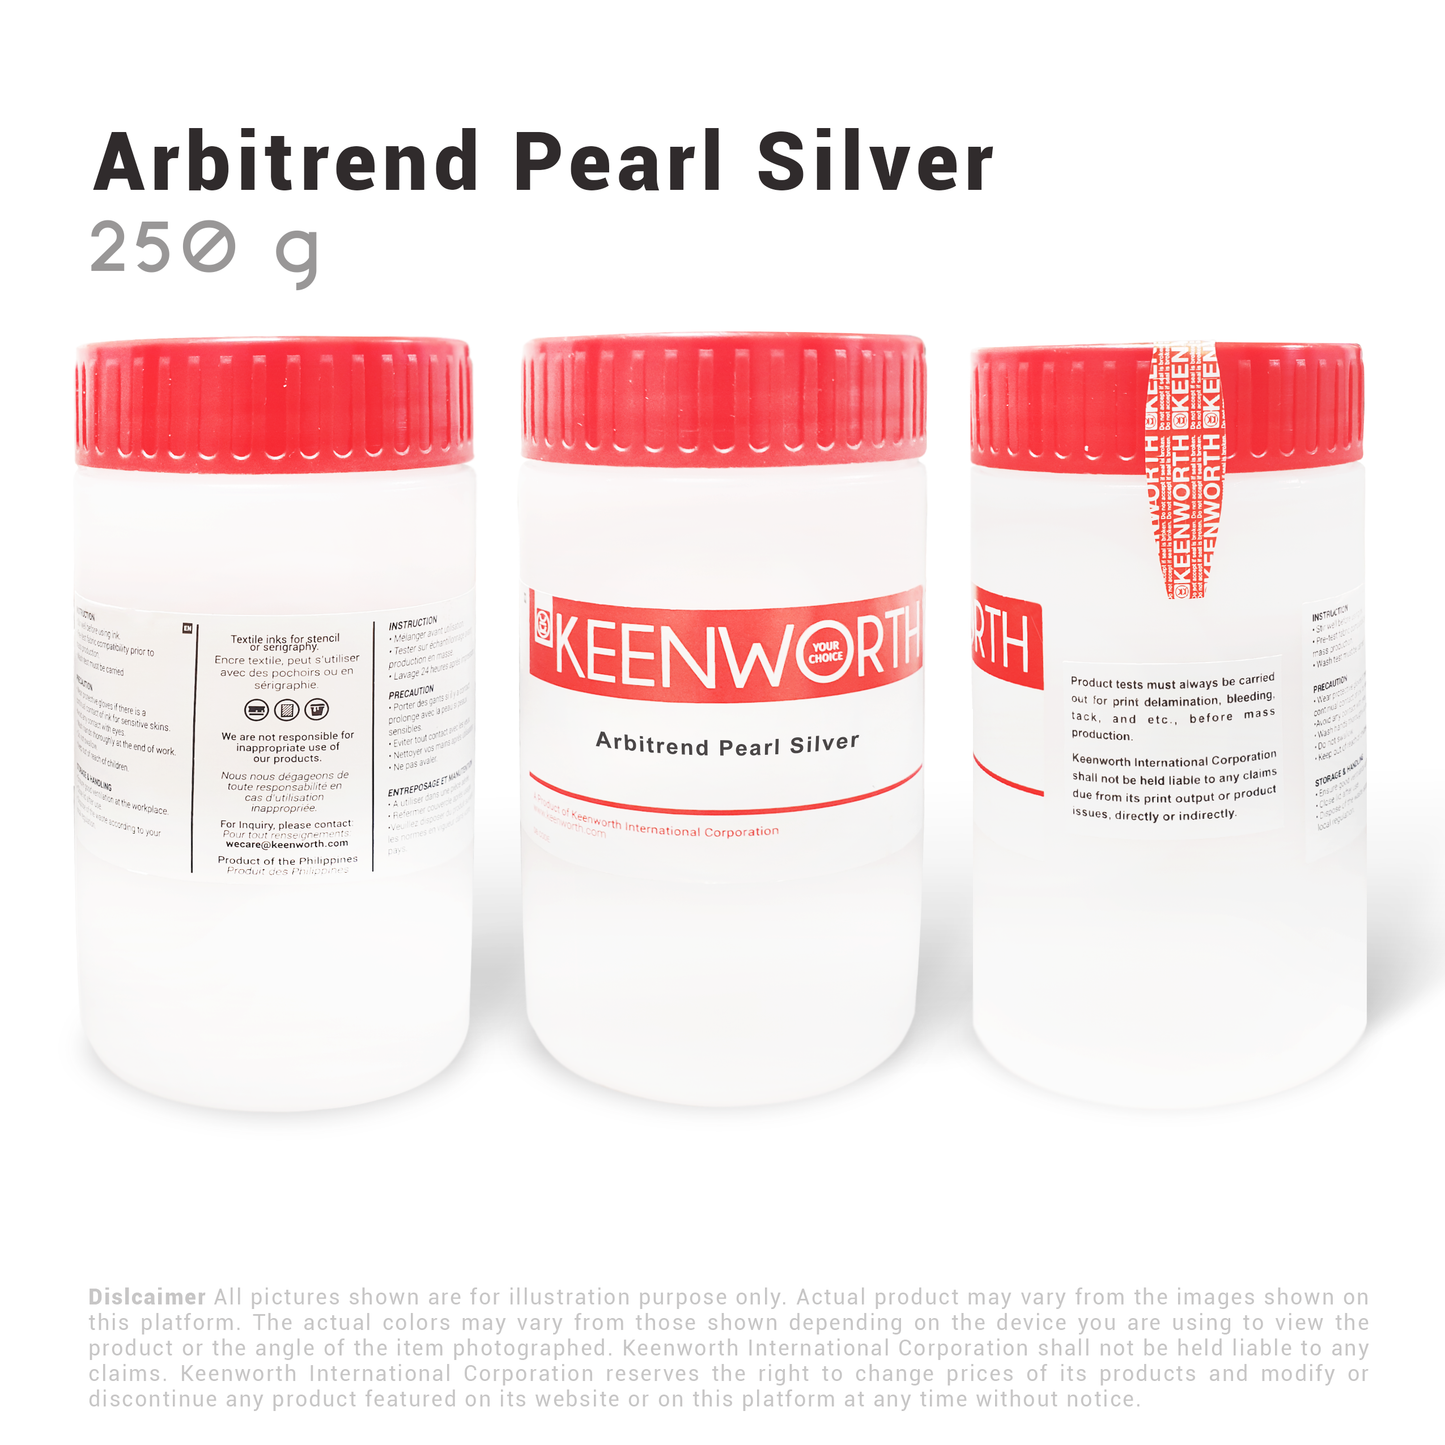 Arbitrend Pearl Silver